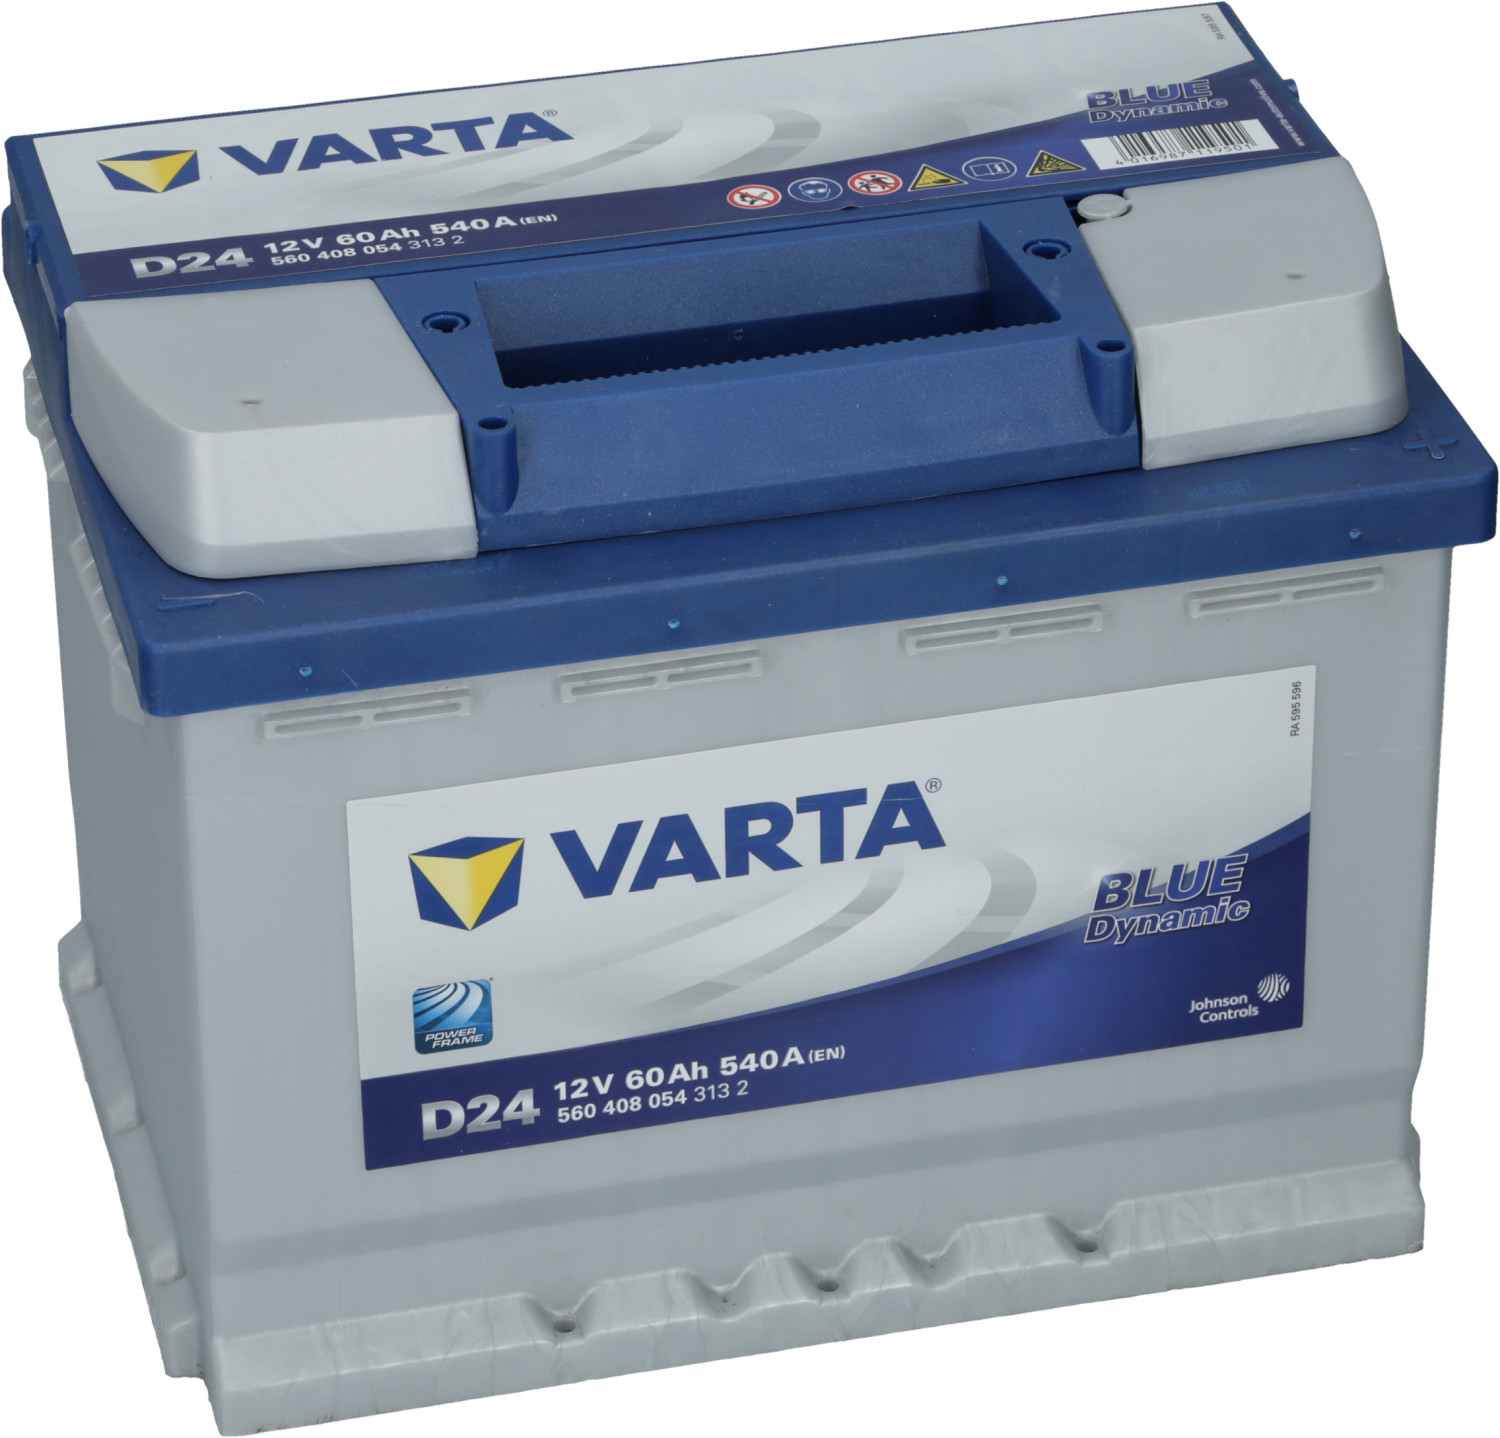 Varta D24 Blue Dynamic Starter Battery Car Battery 12V 60Ah 5604080543132